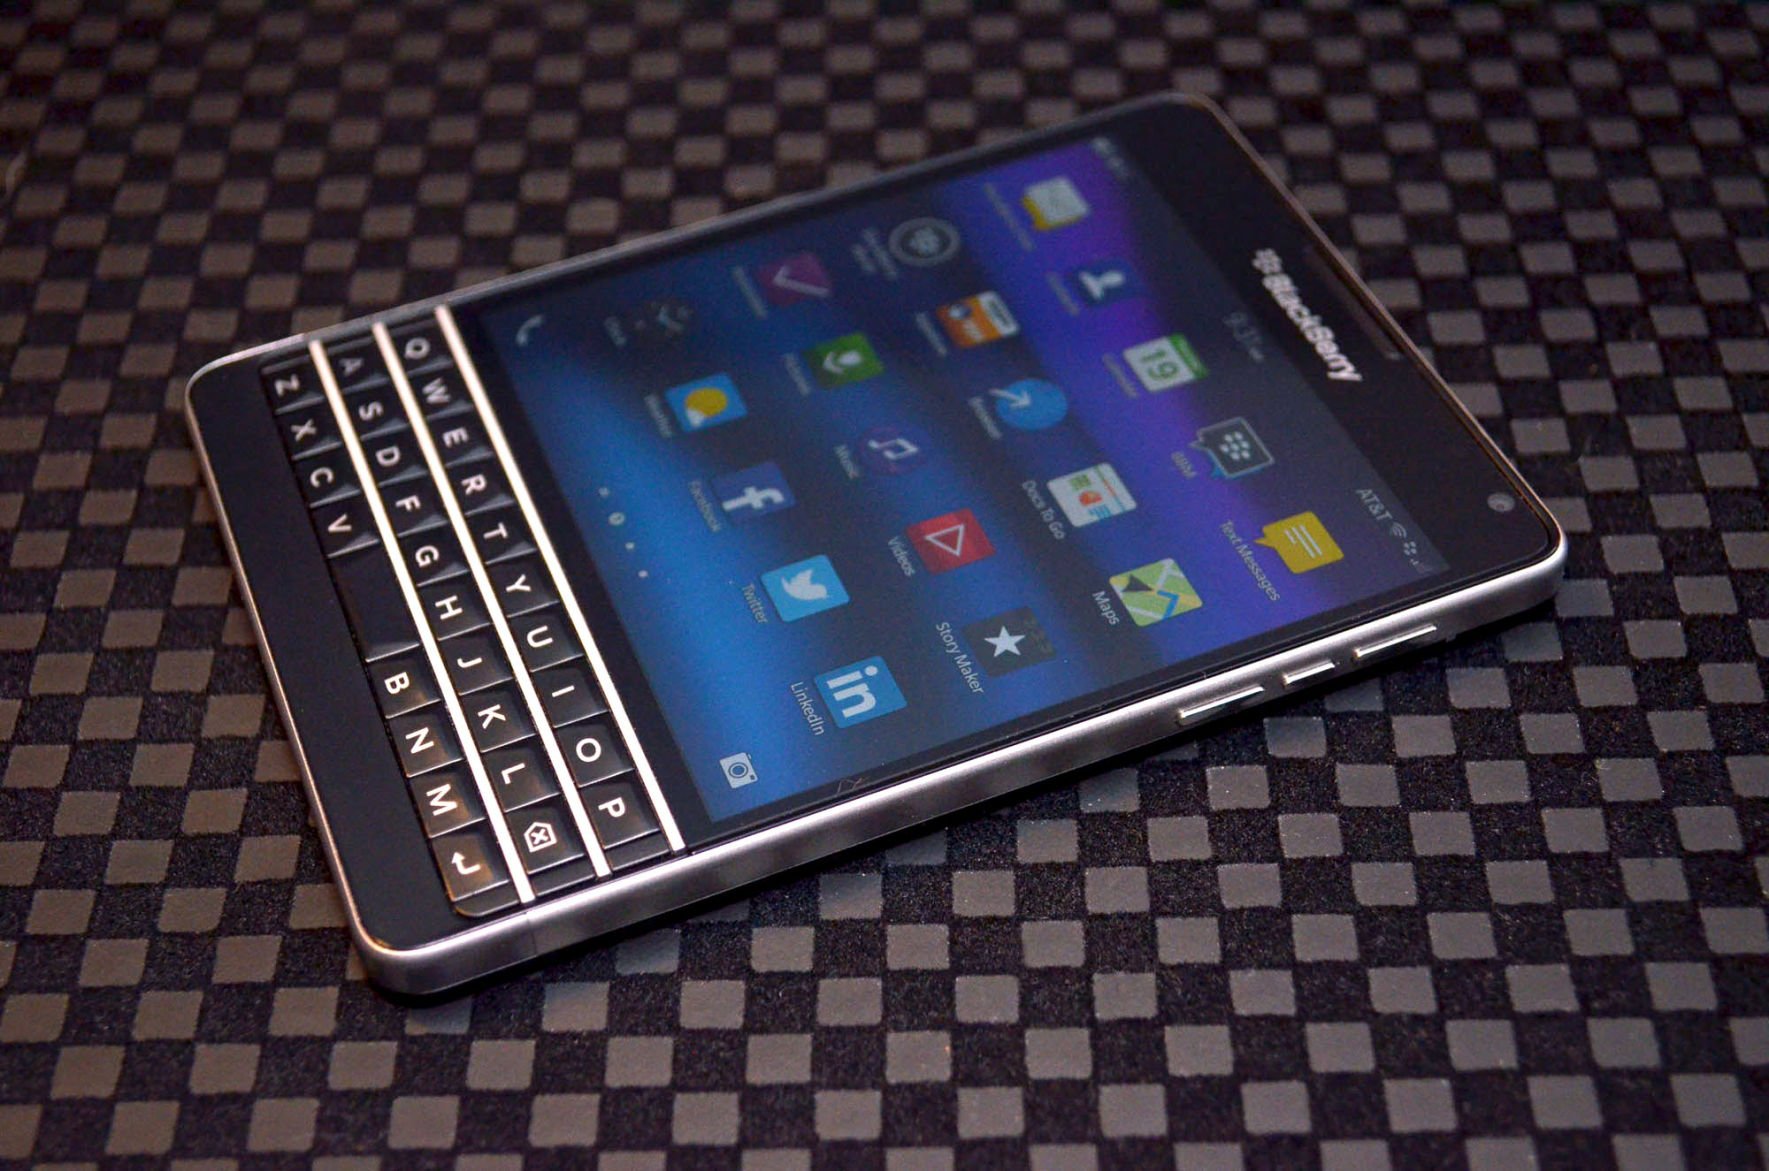 screen grabber for blackberry 10